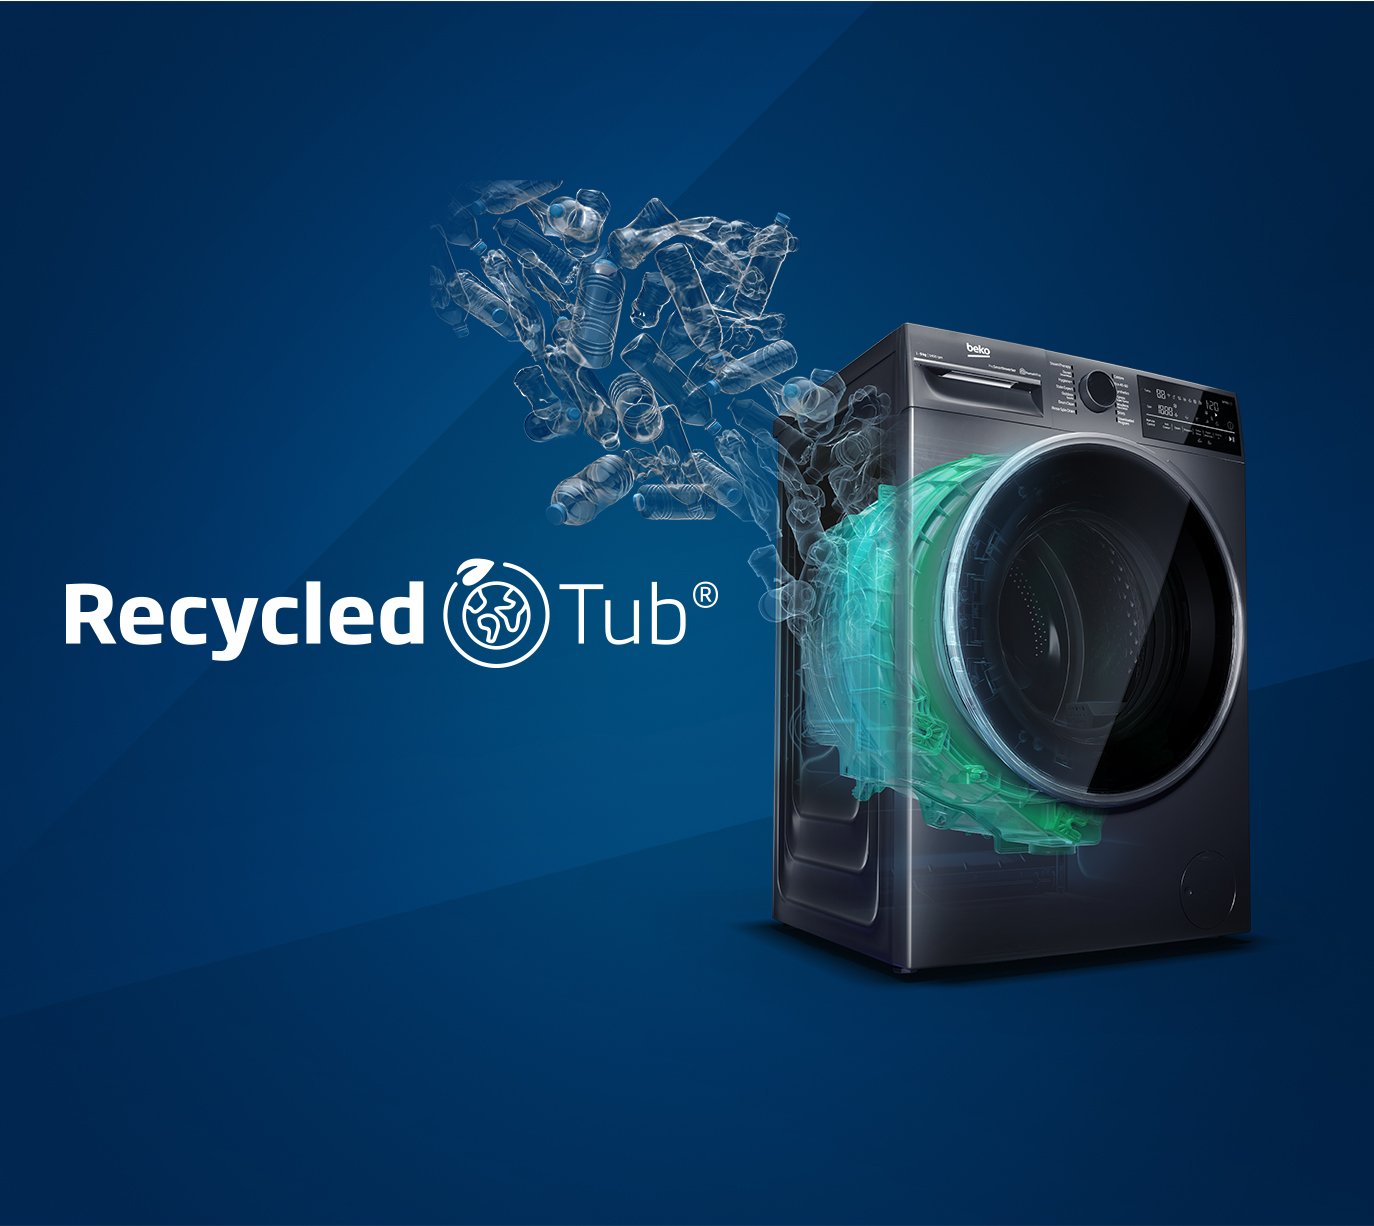 RecycledTub® Washing Machines